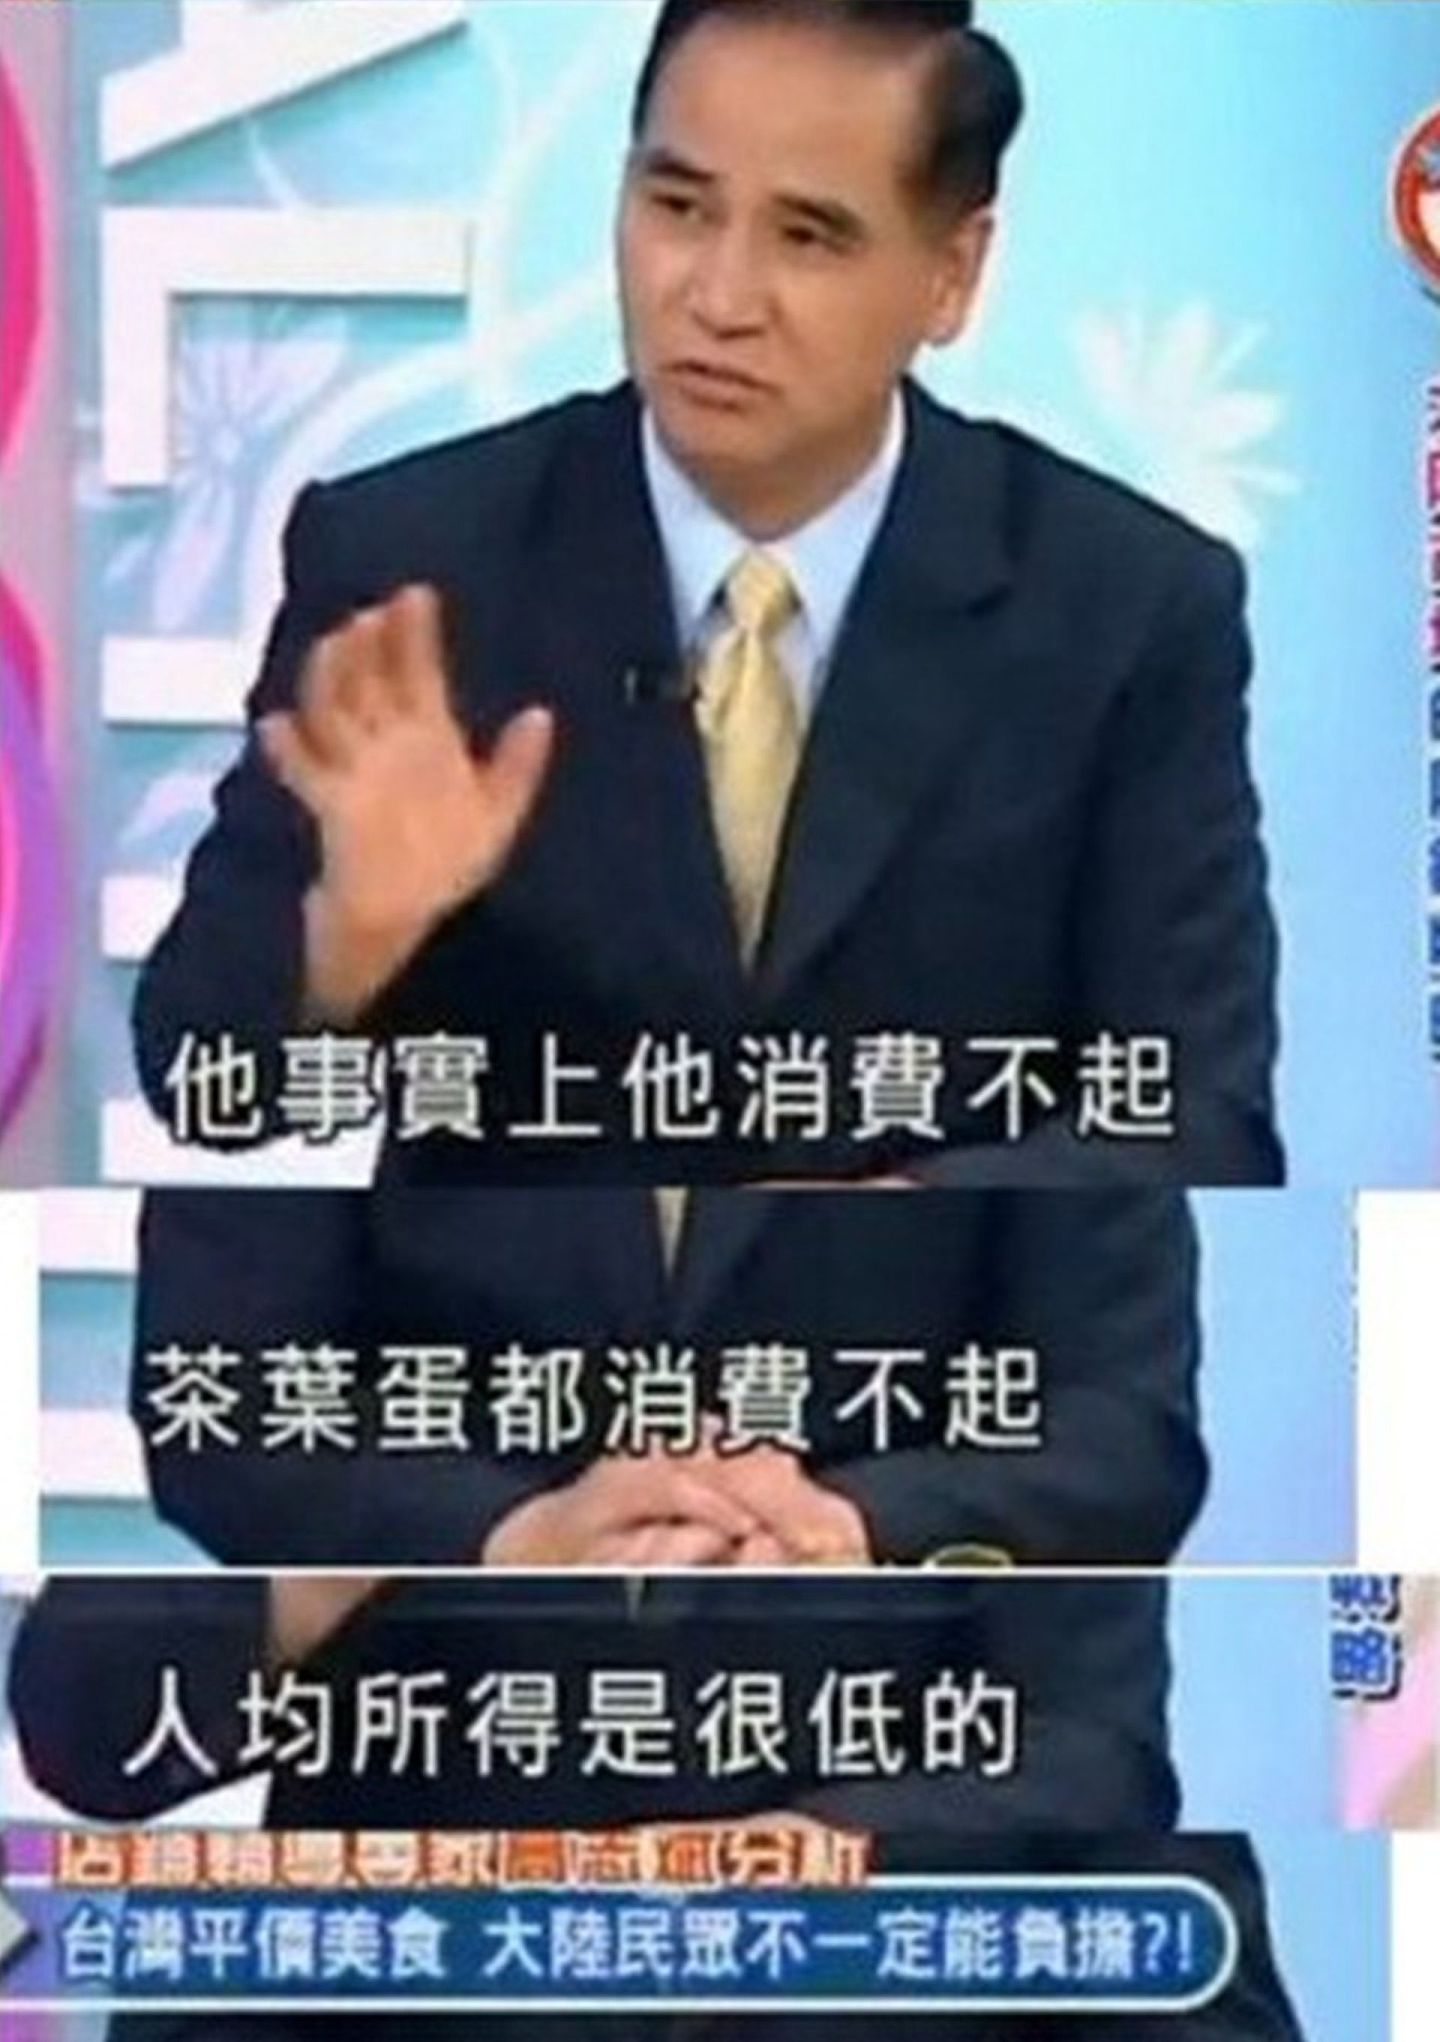 2013年11月一档台湾综艺节目中，嘉宾高志斌称，普通大陆老百姓连“茶叶蛋”都吃不起，又说“台湾人在深圳火车站吃泡面引起围观”。言论引发大陆民众强烈反应。（微博@黄安）